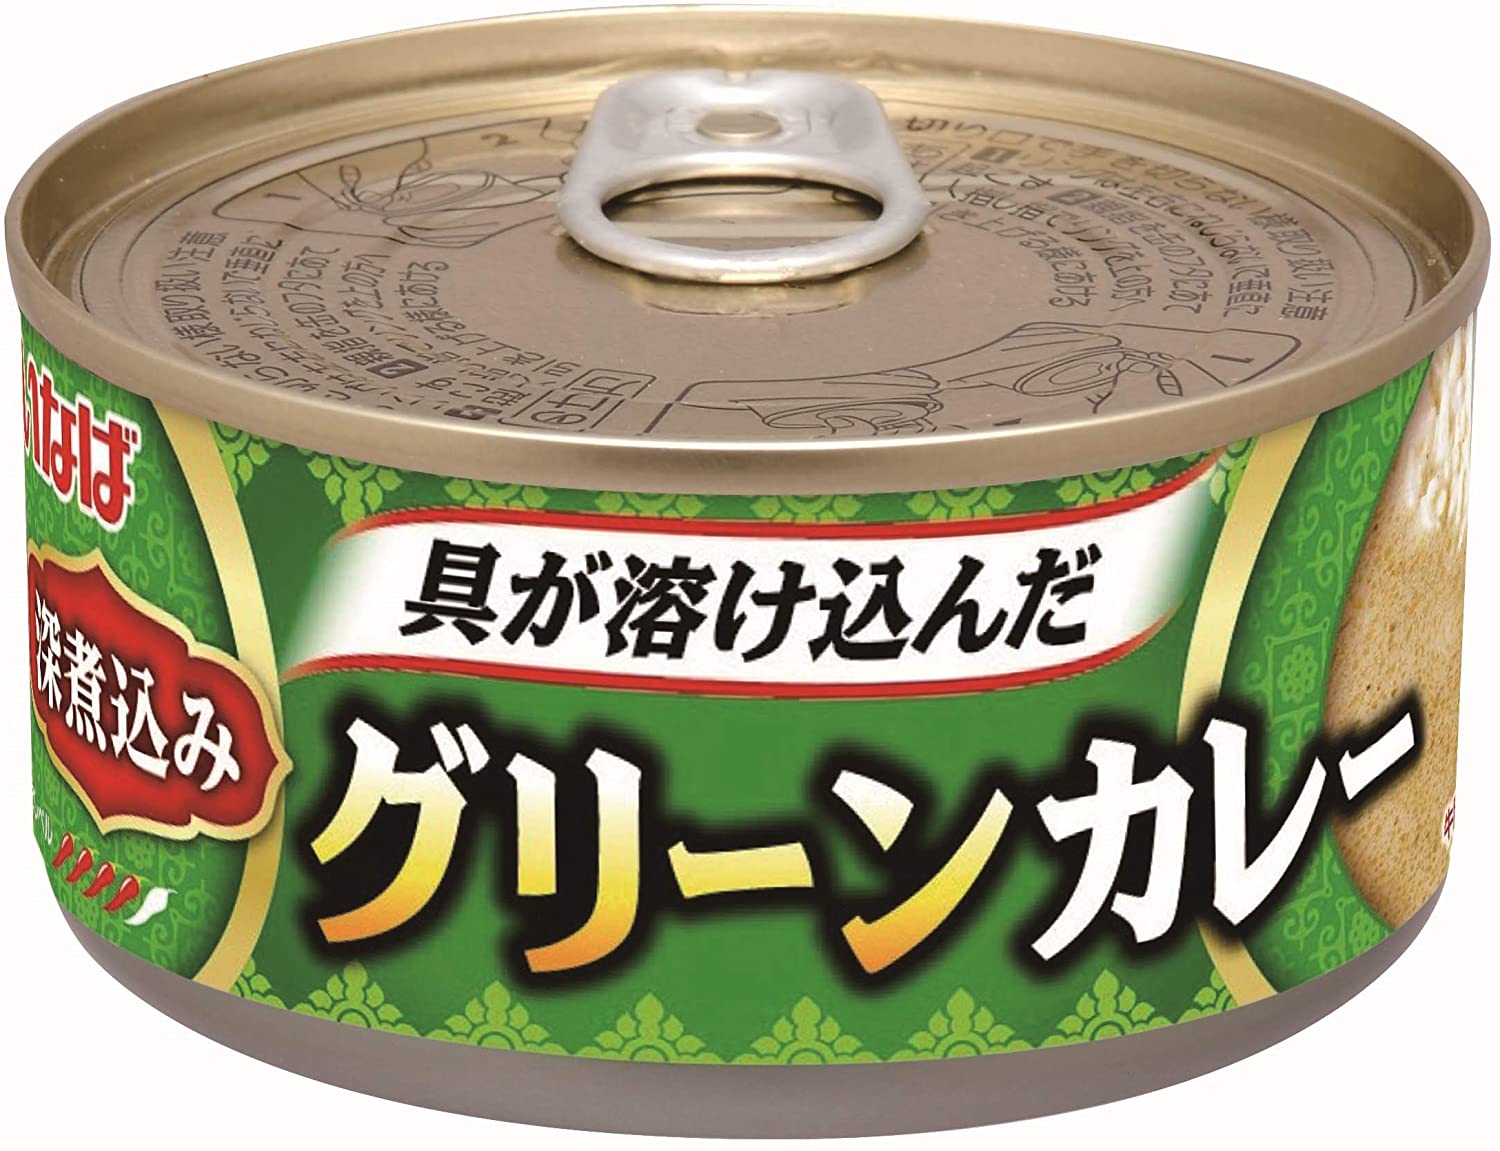 独創的 いなば 深煮込みグリーンカレー 165g 24個 缶詰